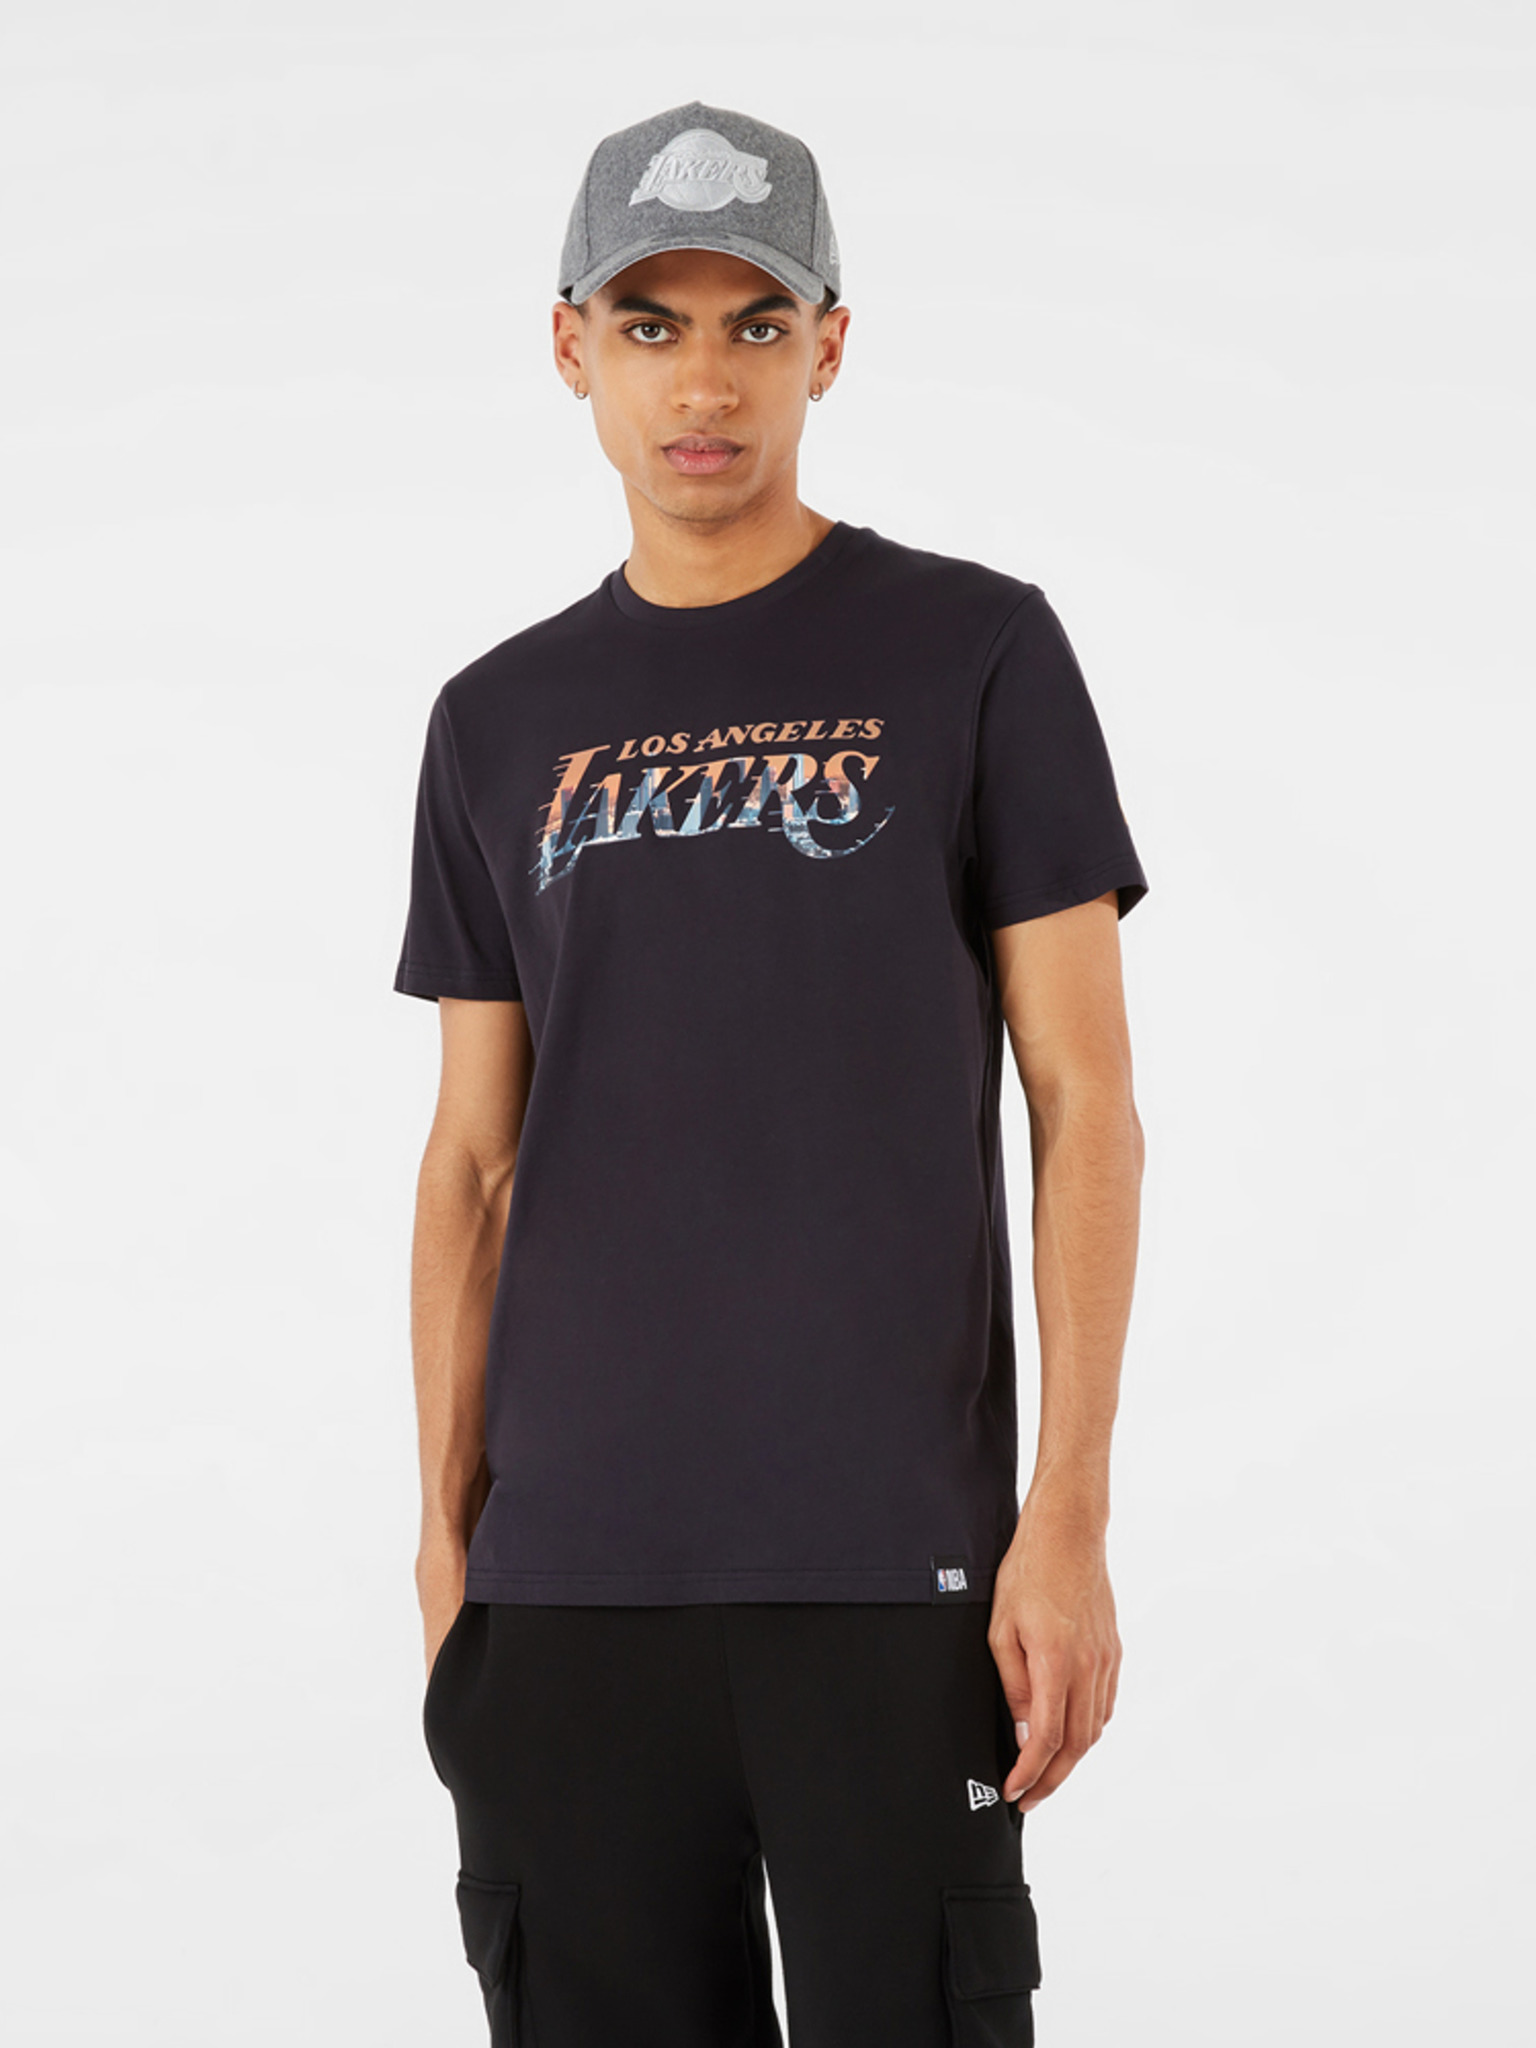 LA Lakers Logo on Black T-Shirt